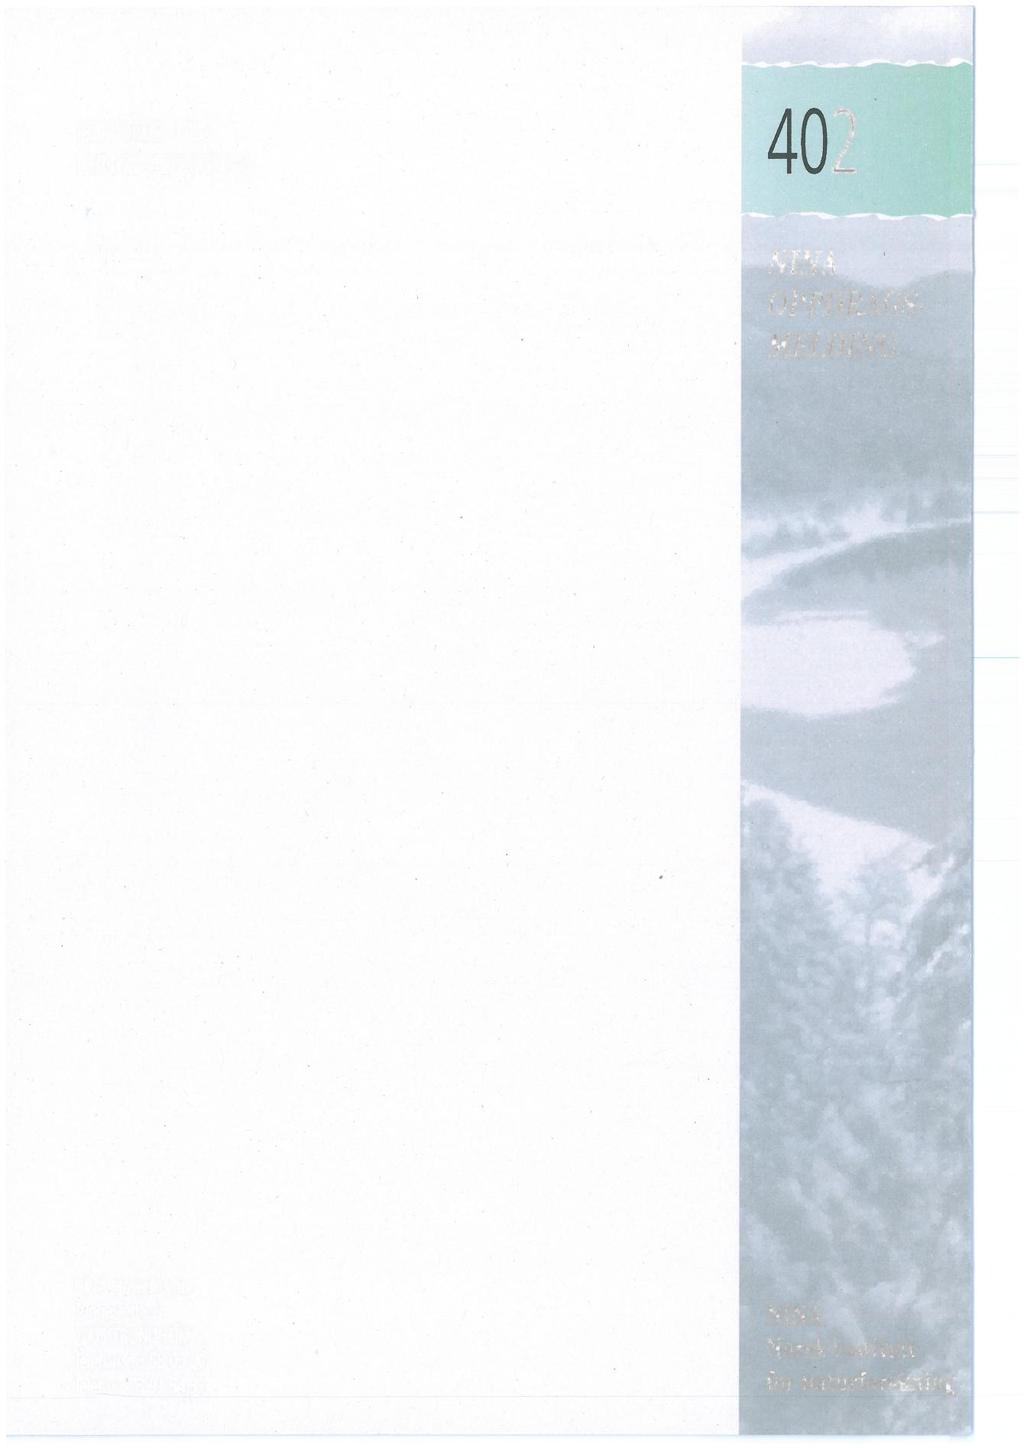 ISSN 0802-4103 ISBN 82-426-0670-6 402 NNA OPPDRAGS- MELDIN